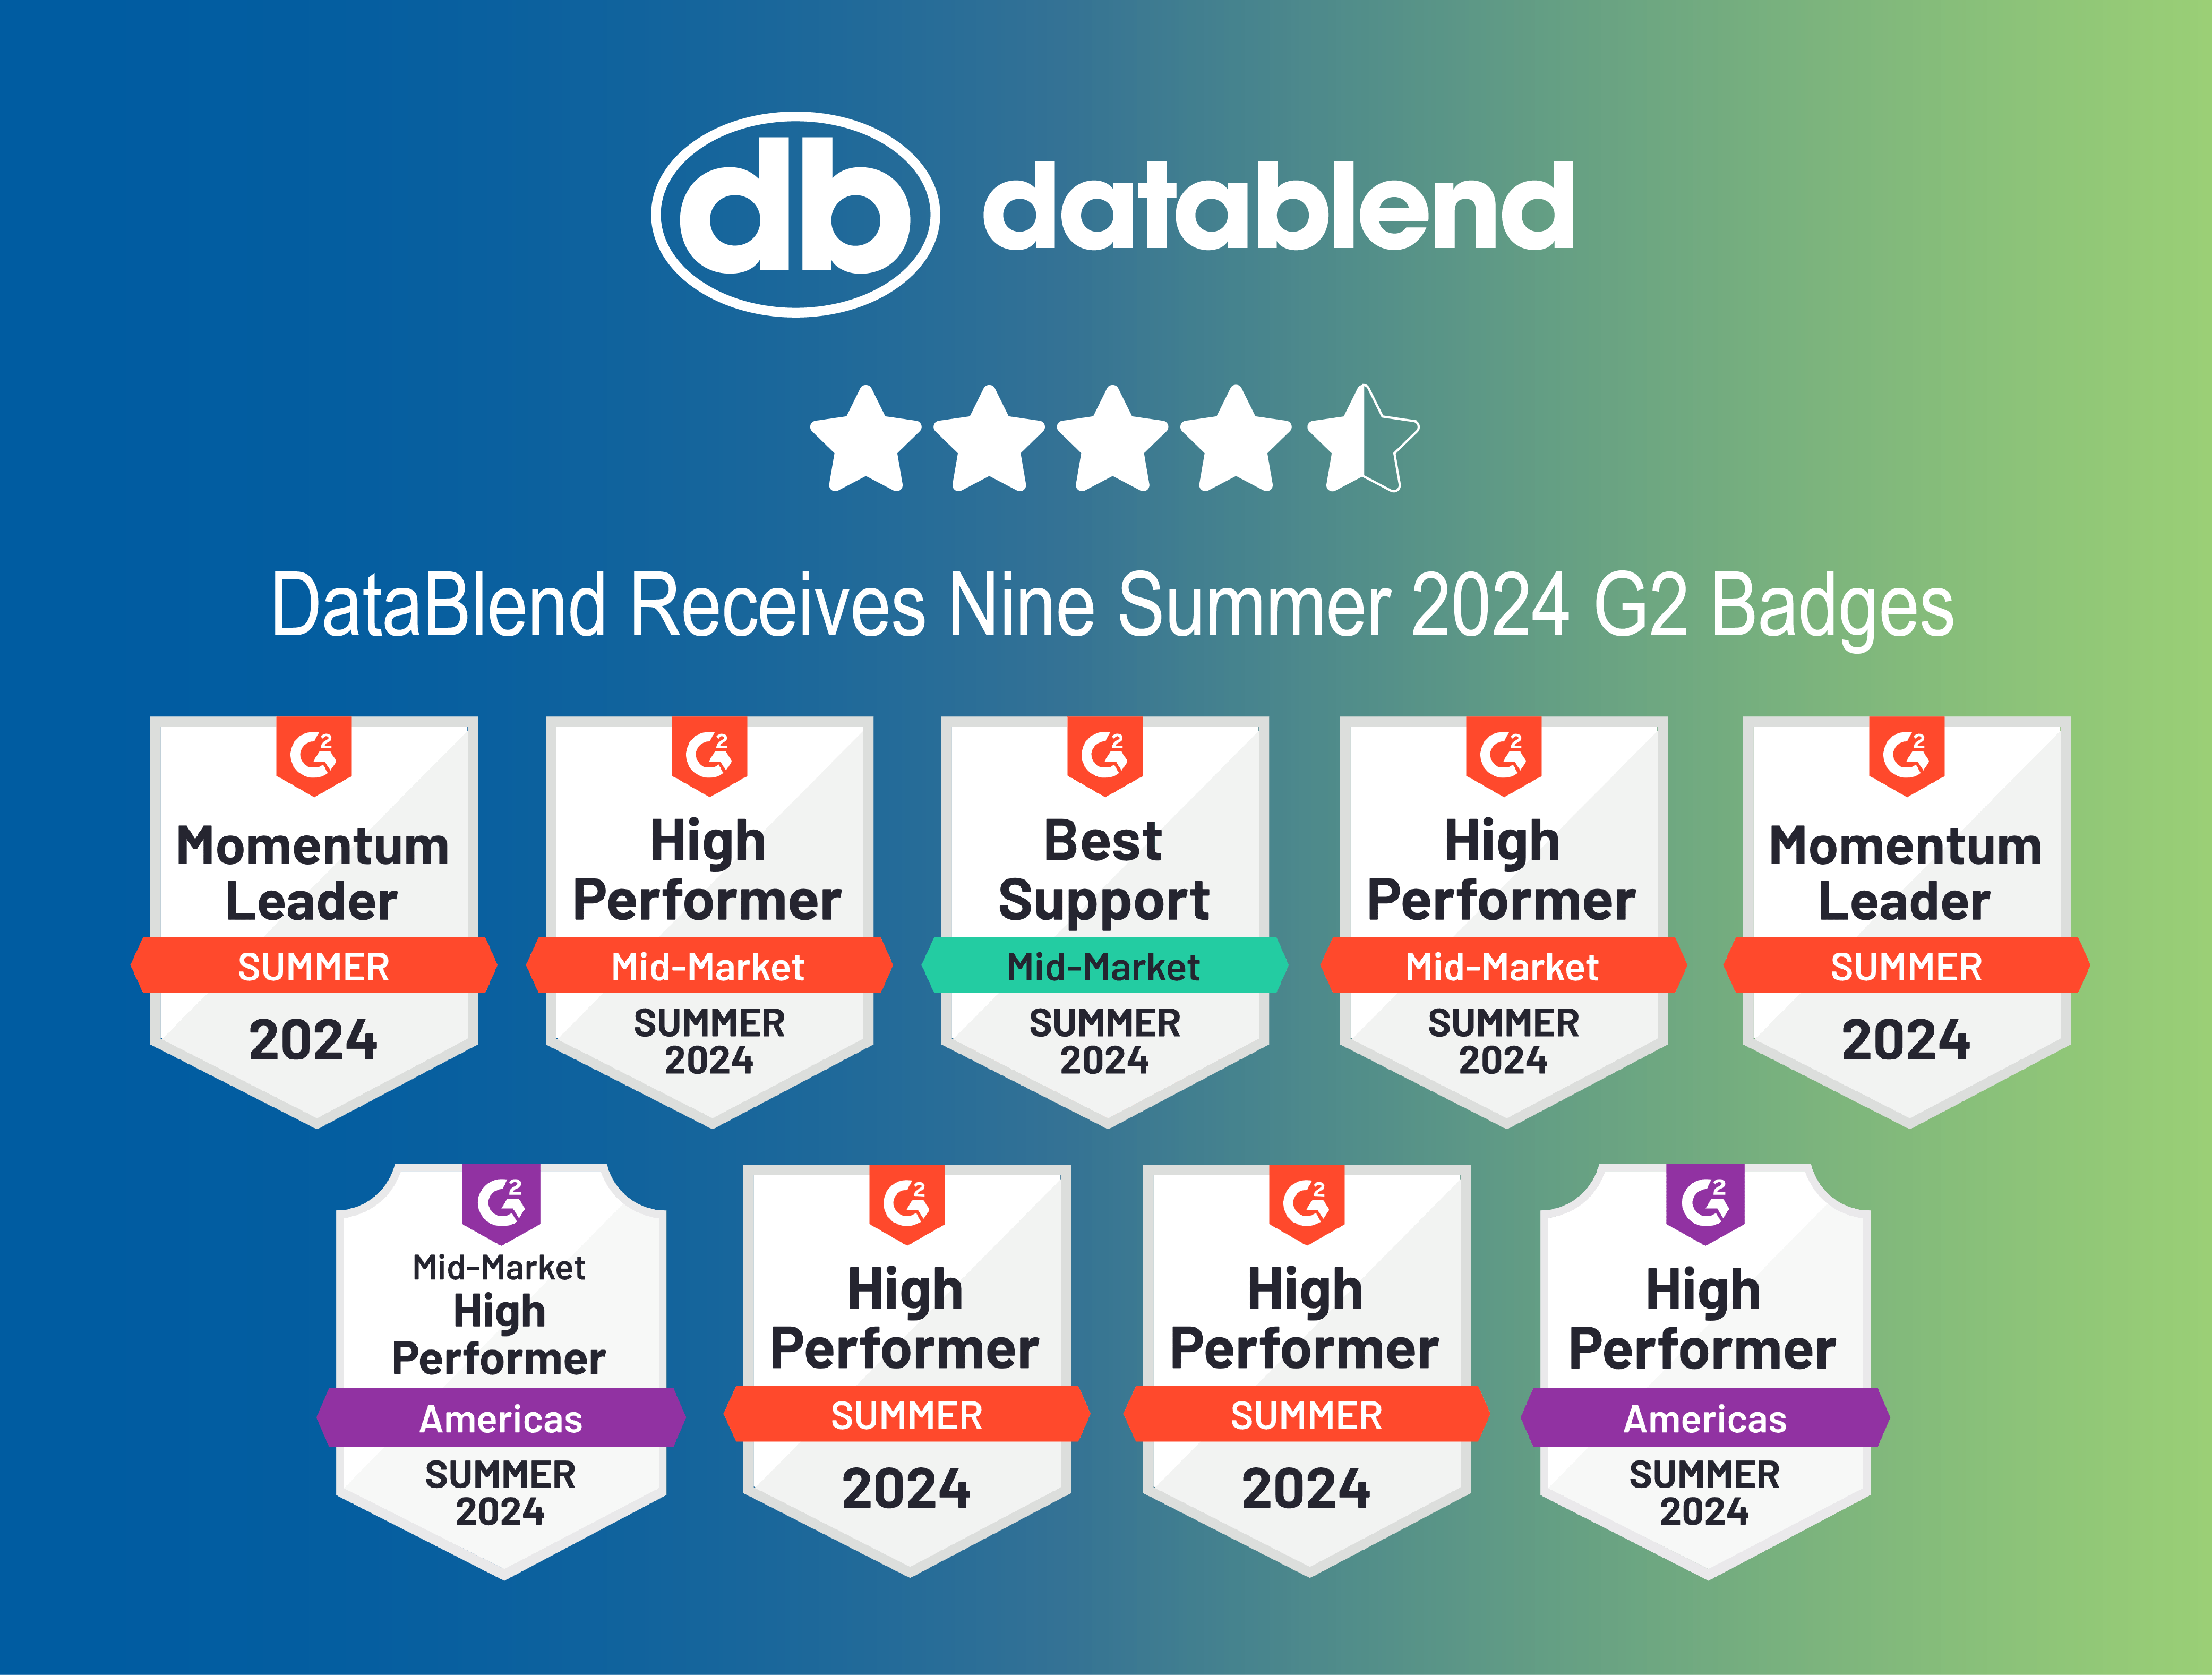 DataBlend Receives Nine Summer 2024 G2 Badges – Including Momentum Leader Badges